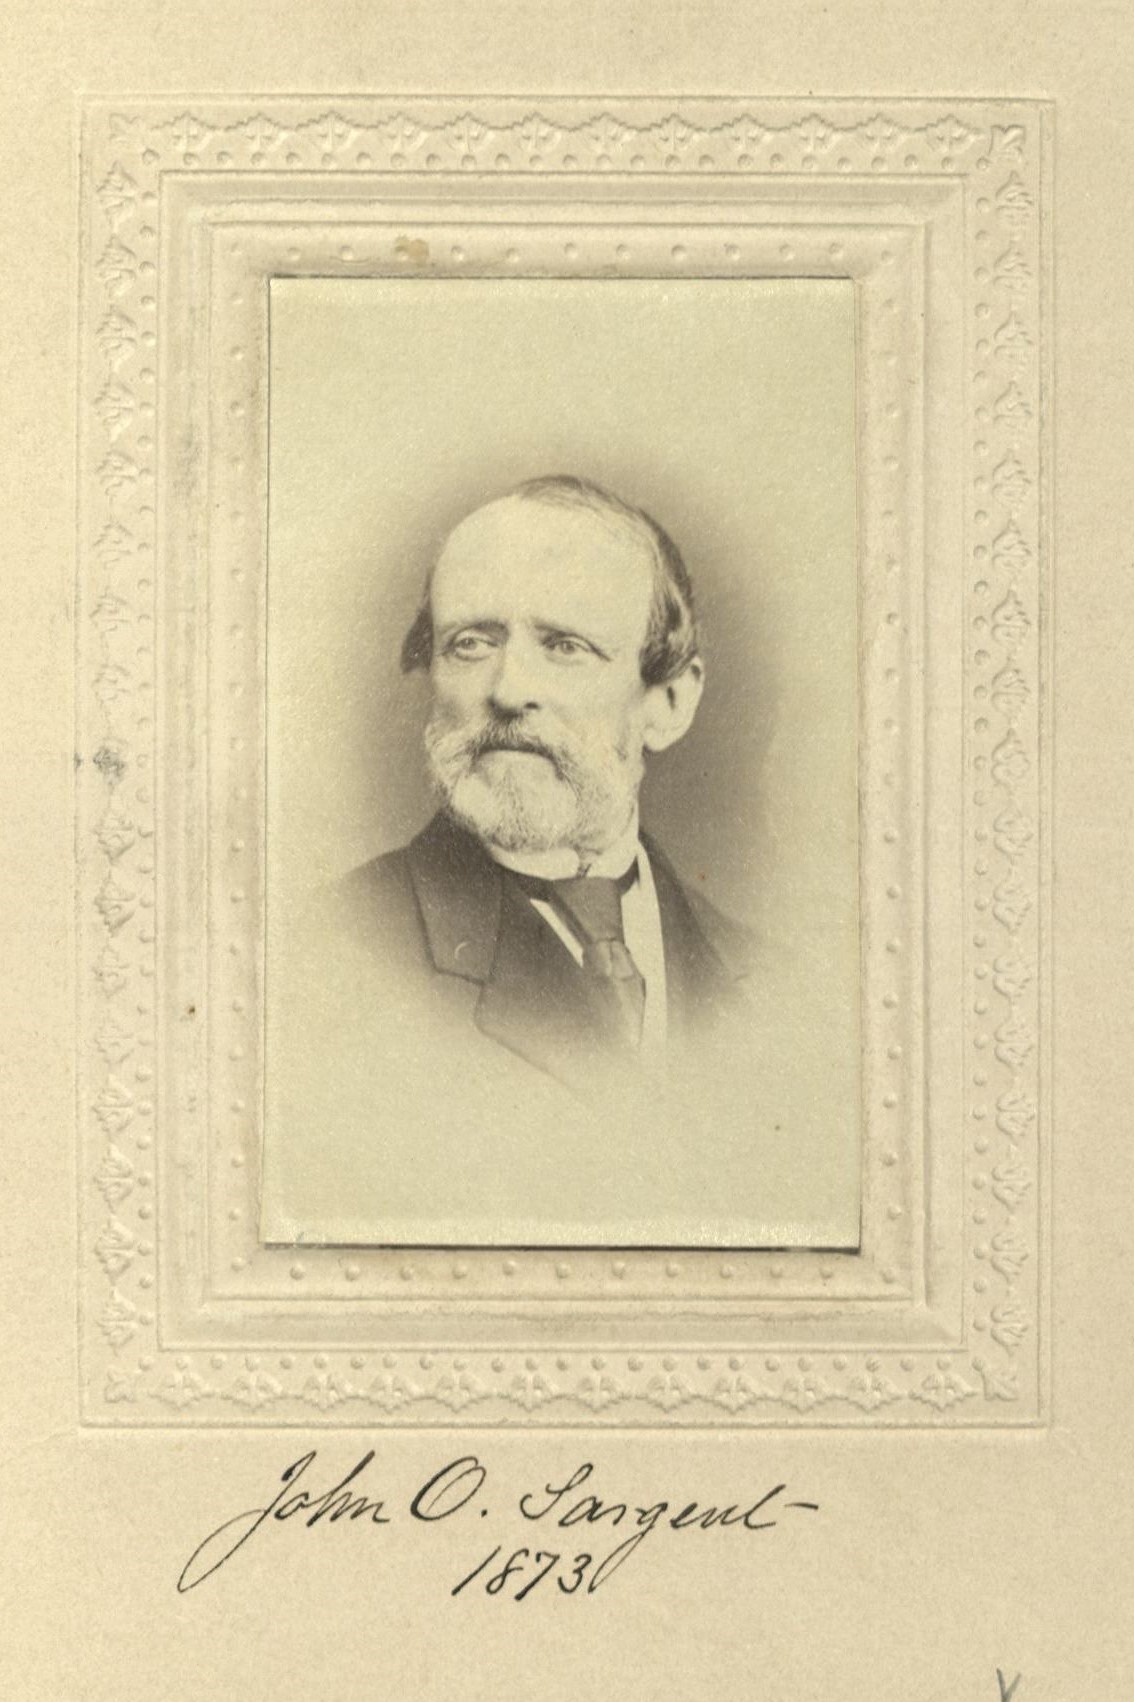 Member portrait of John O. Sargent